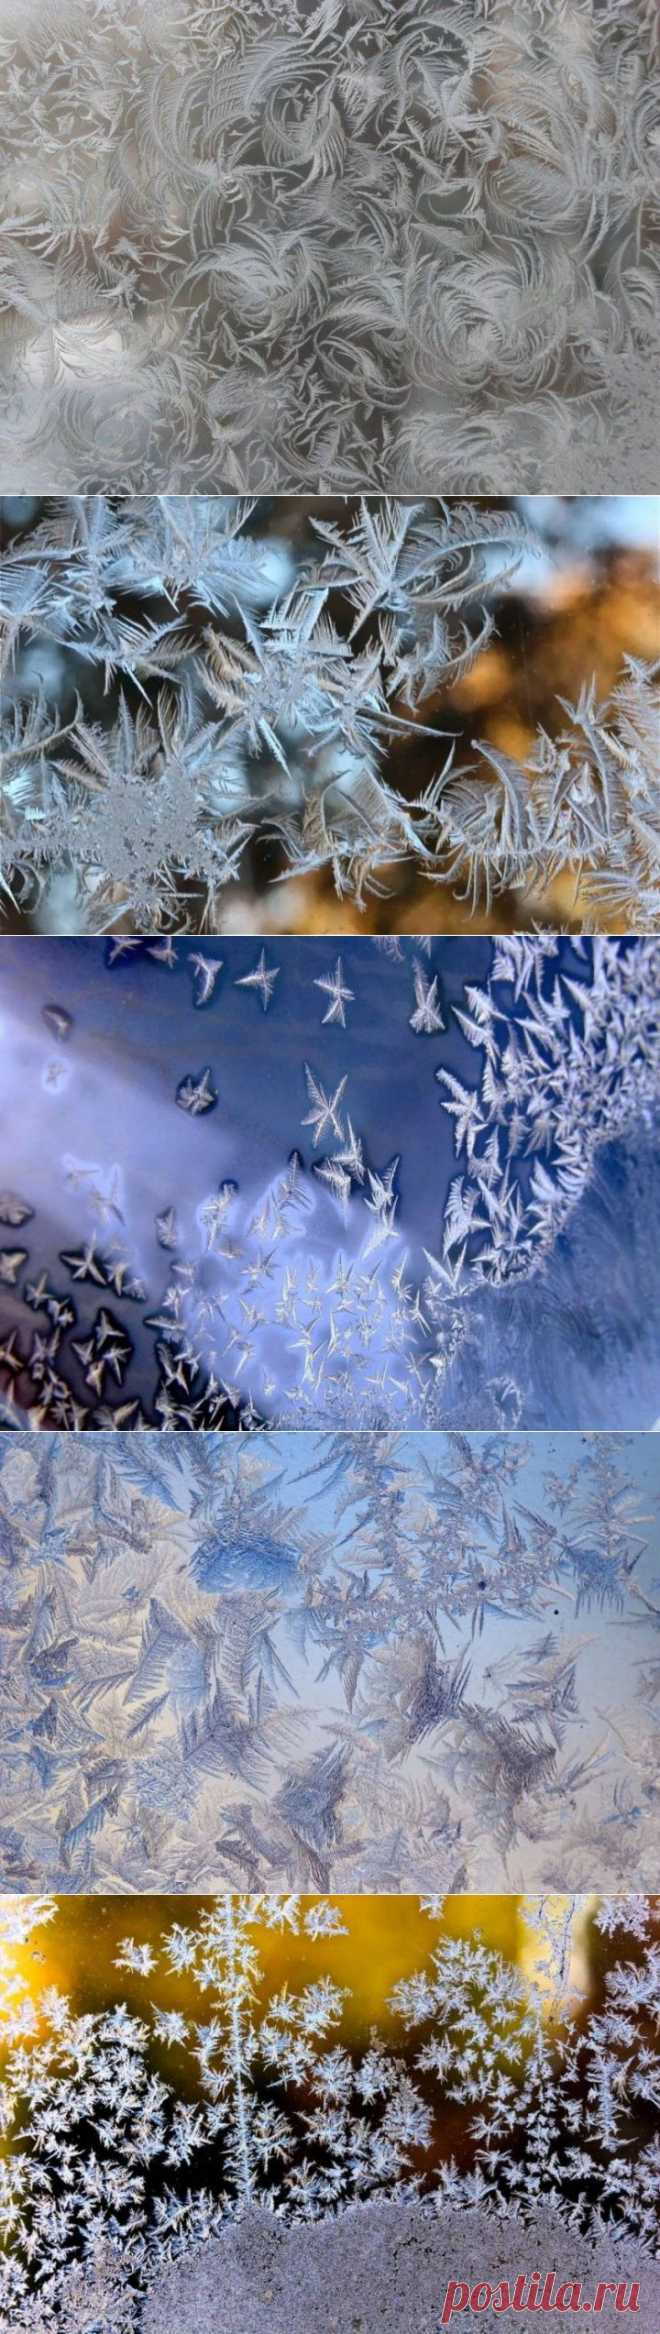 (+1) тема - Морозные узоры на окнах | ЛЮБИМЫЕ ФОТО